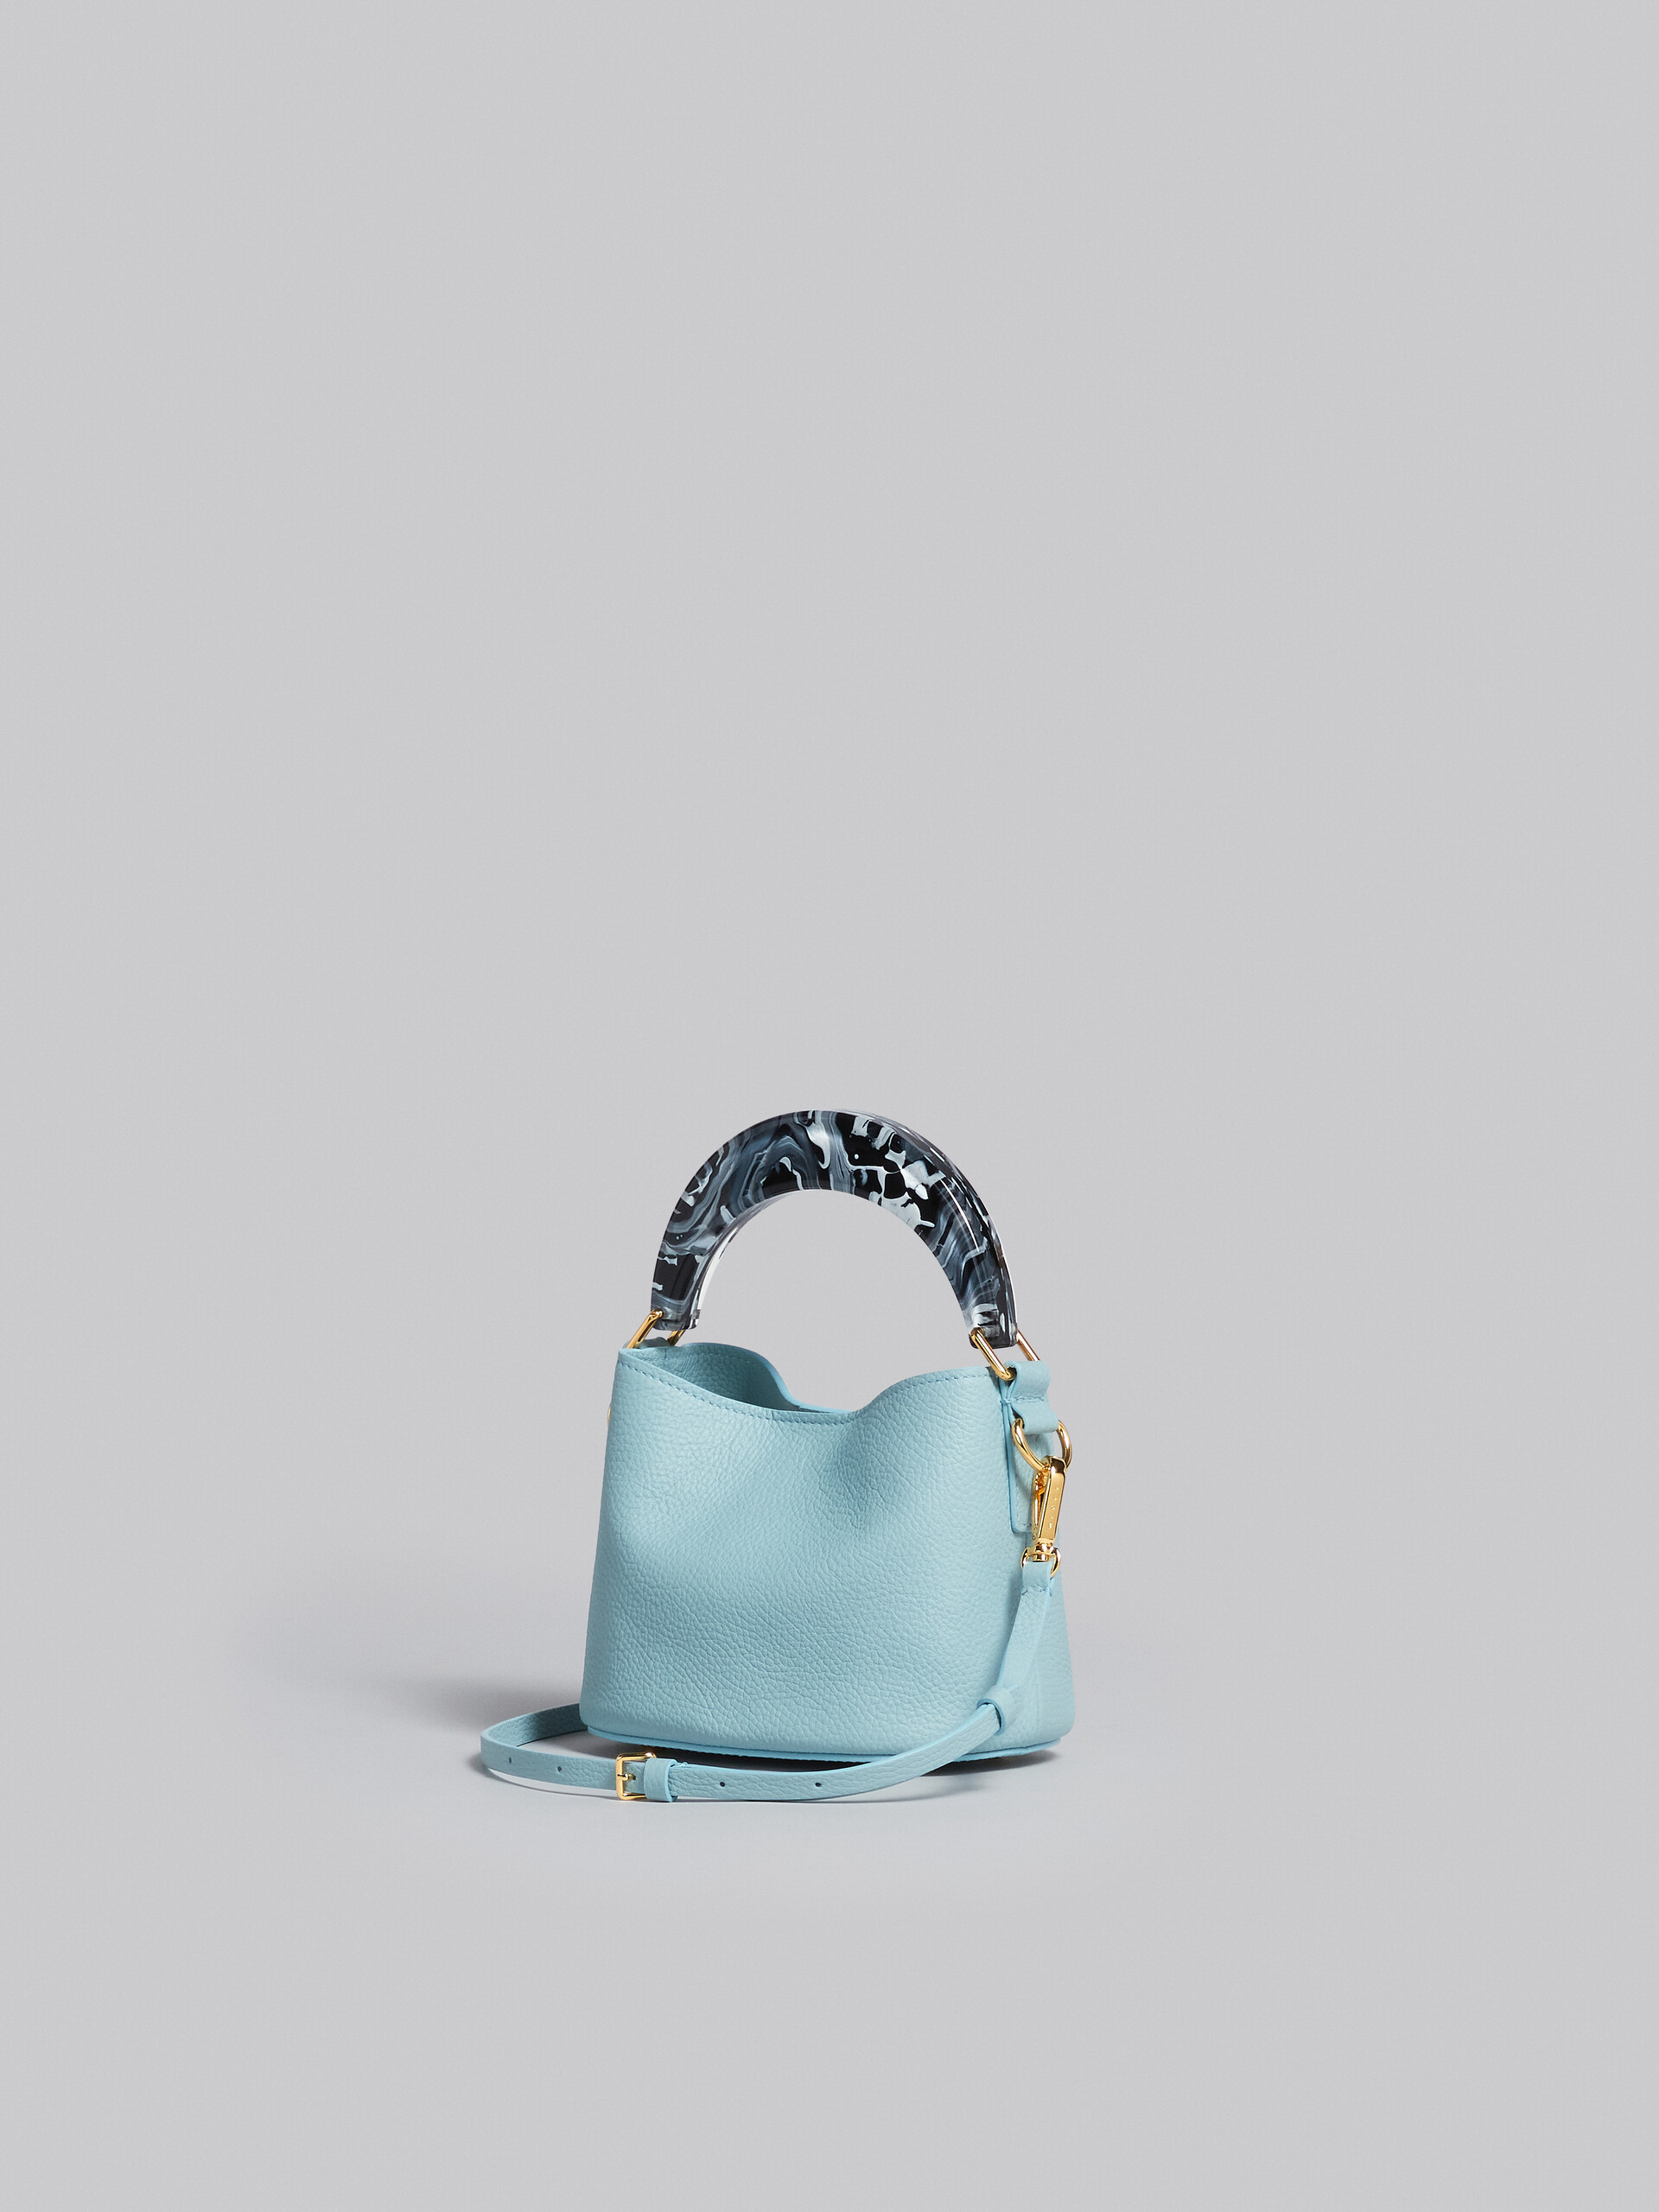 Venice Mini Bucket Bag in light blue leather - Shoulder Bag - Image 3